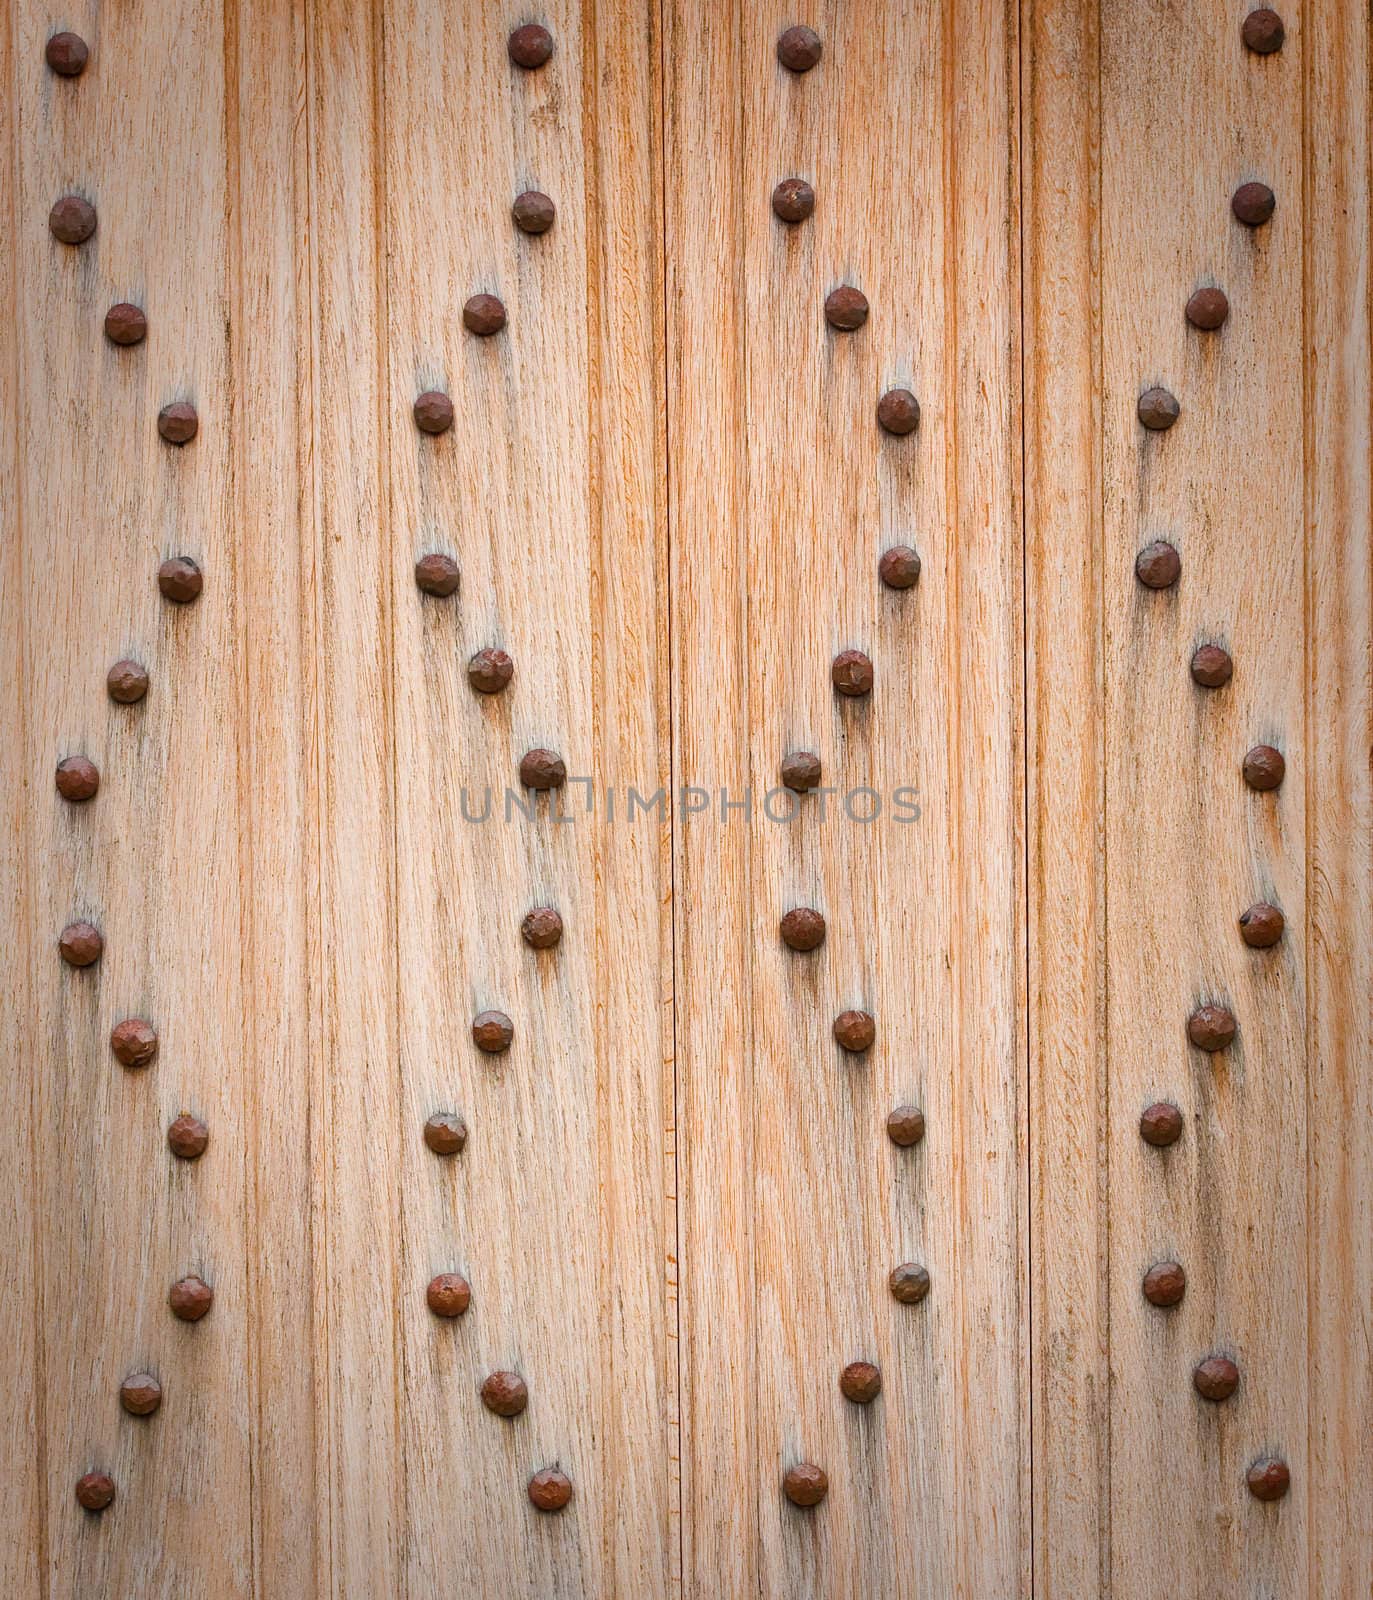 studded wooden door as background